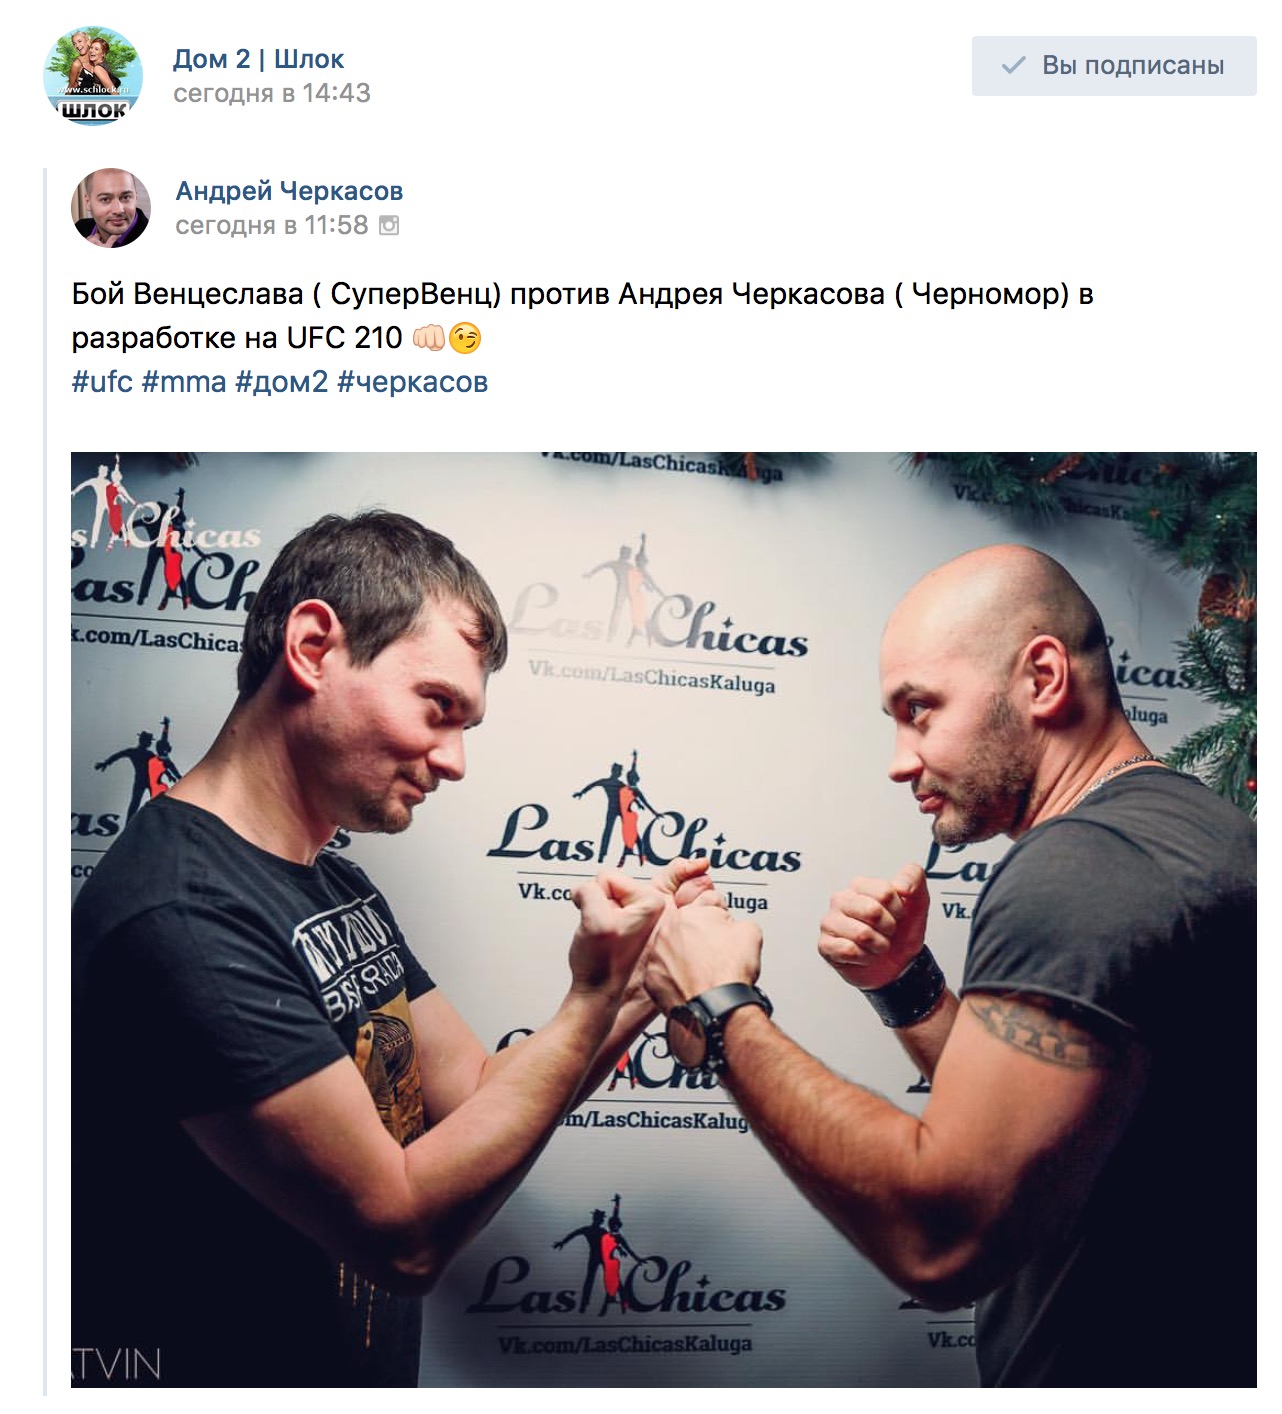 Бой Венцеслава против Андрея Черкасова